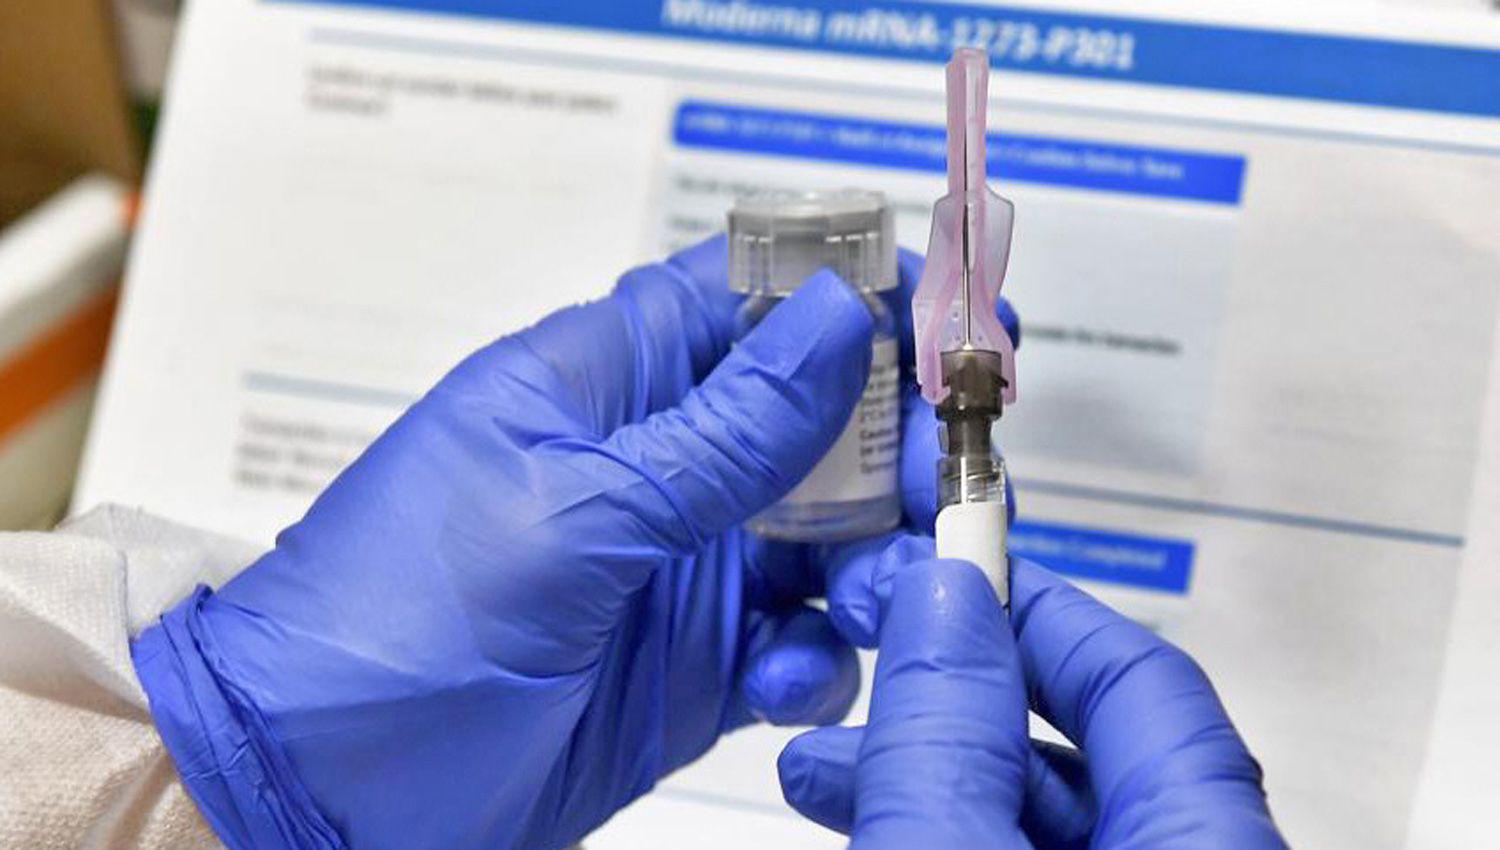 Preveacuten distribucioacuten en enero de la primera vacuna por el Covid-19